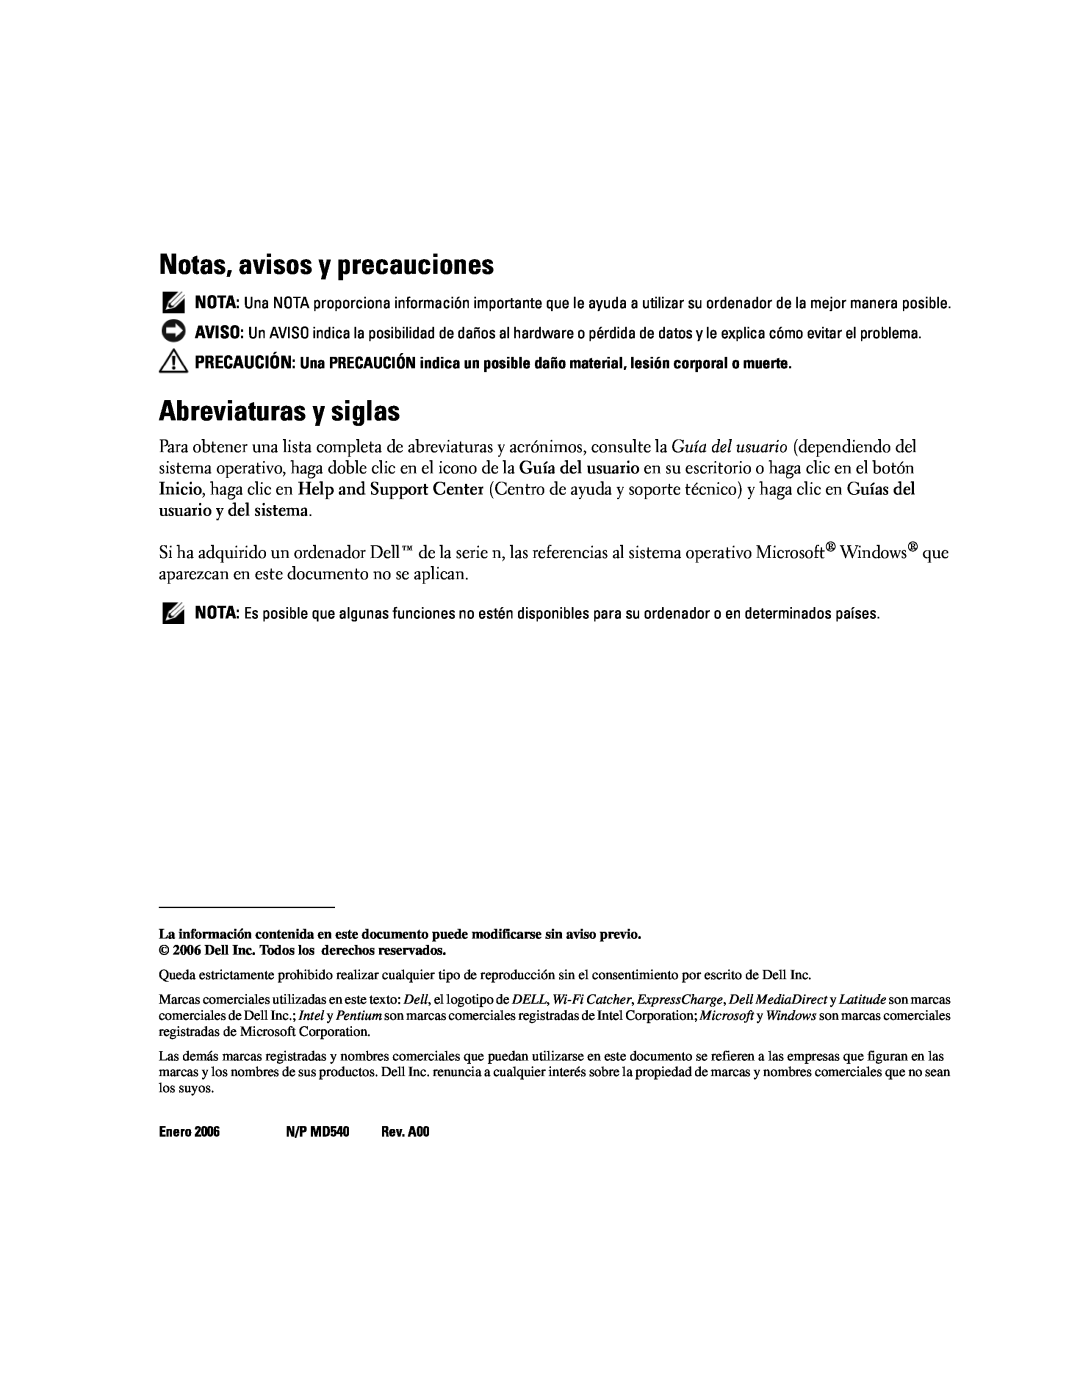 Dell D620 manual Notas, avisos y precauciones, Abreviaturas y siglas, Enero, N/P MD540 